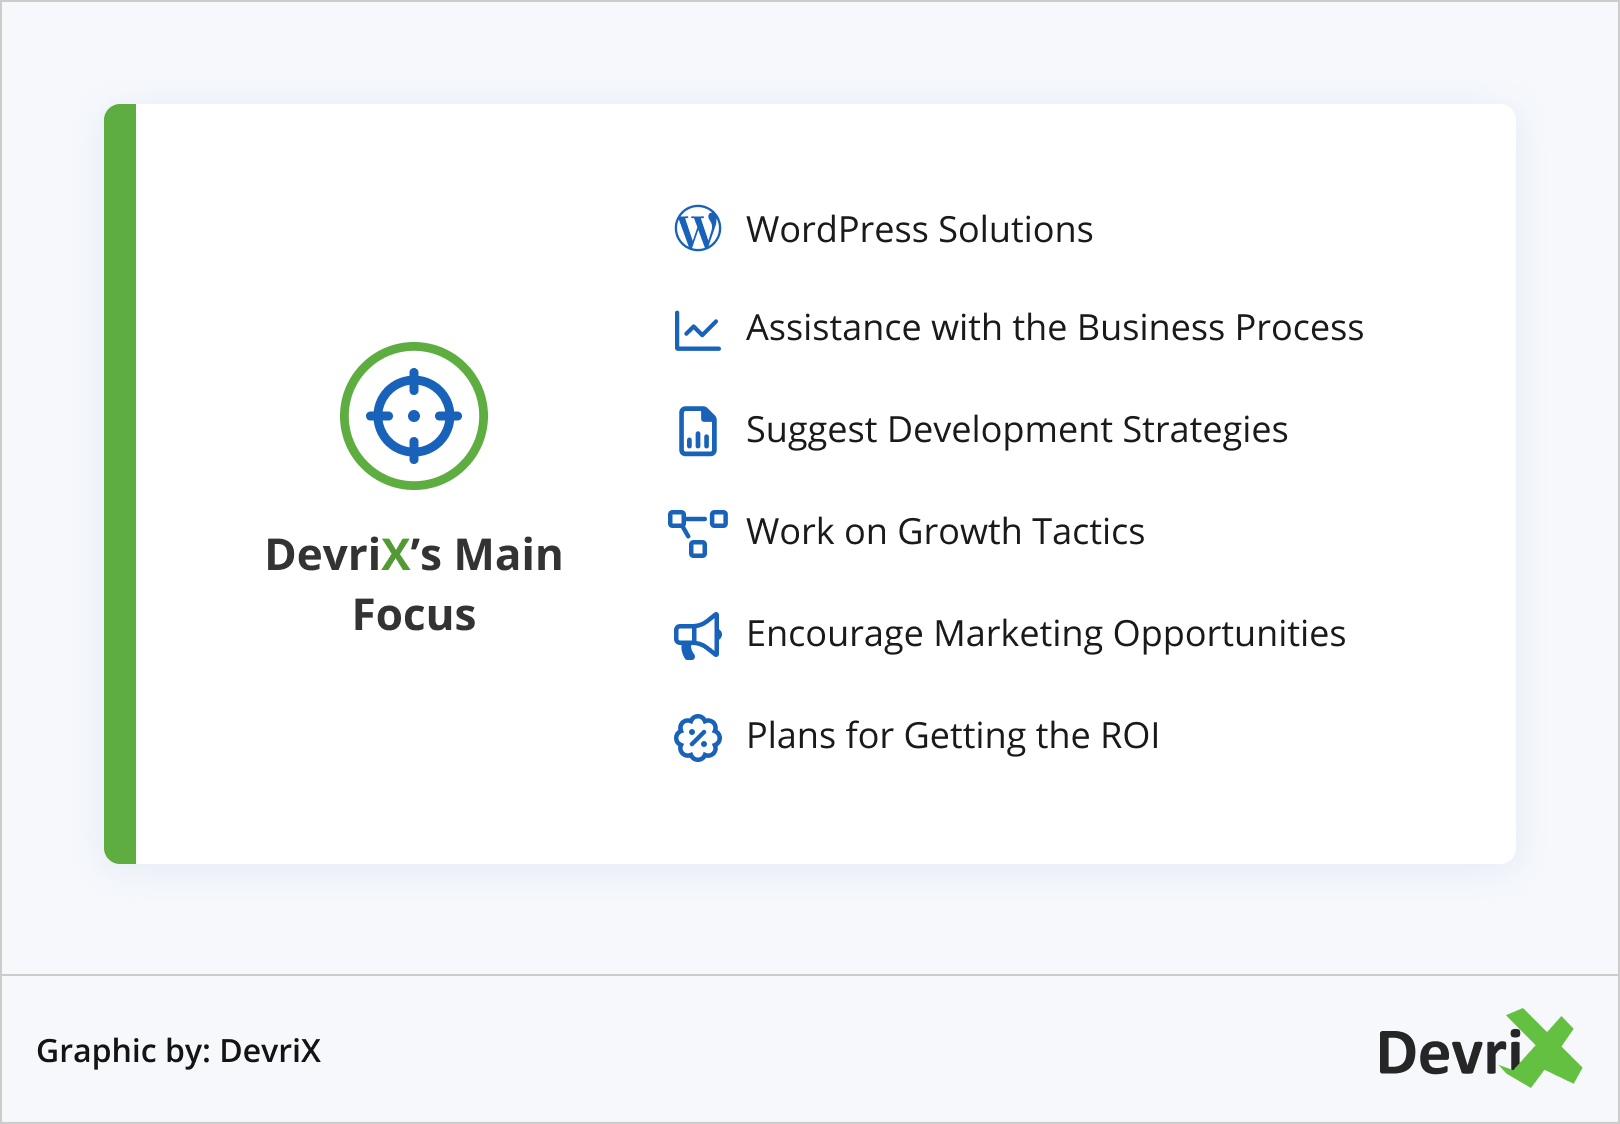 DevriX’s Main Focus